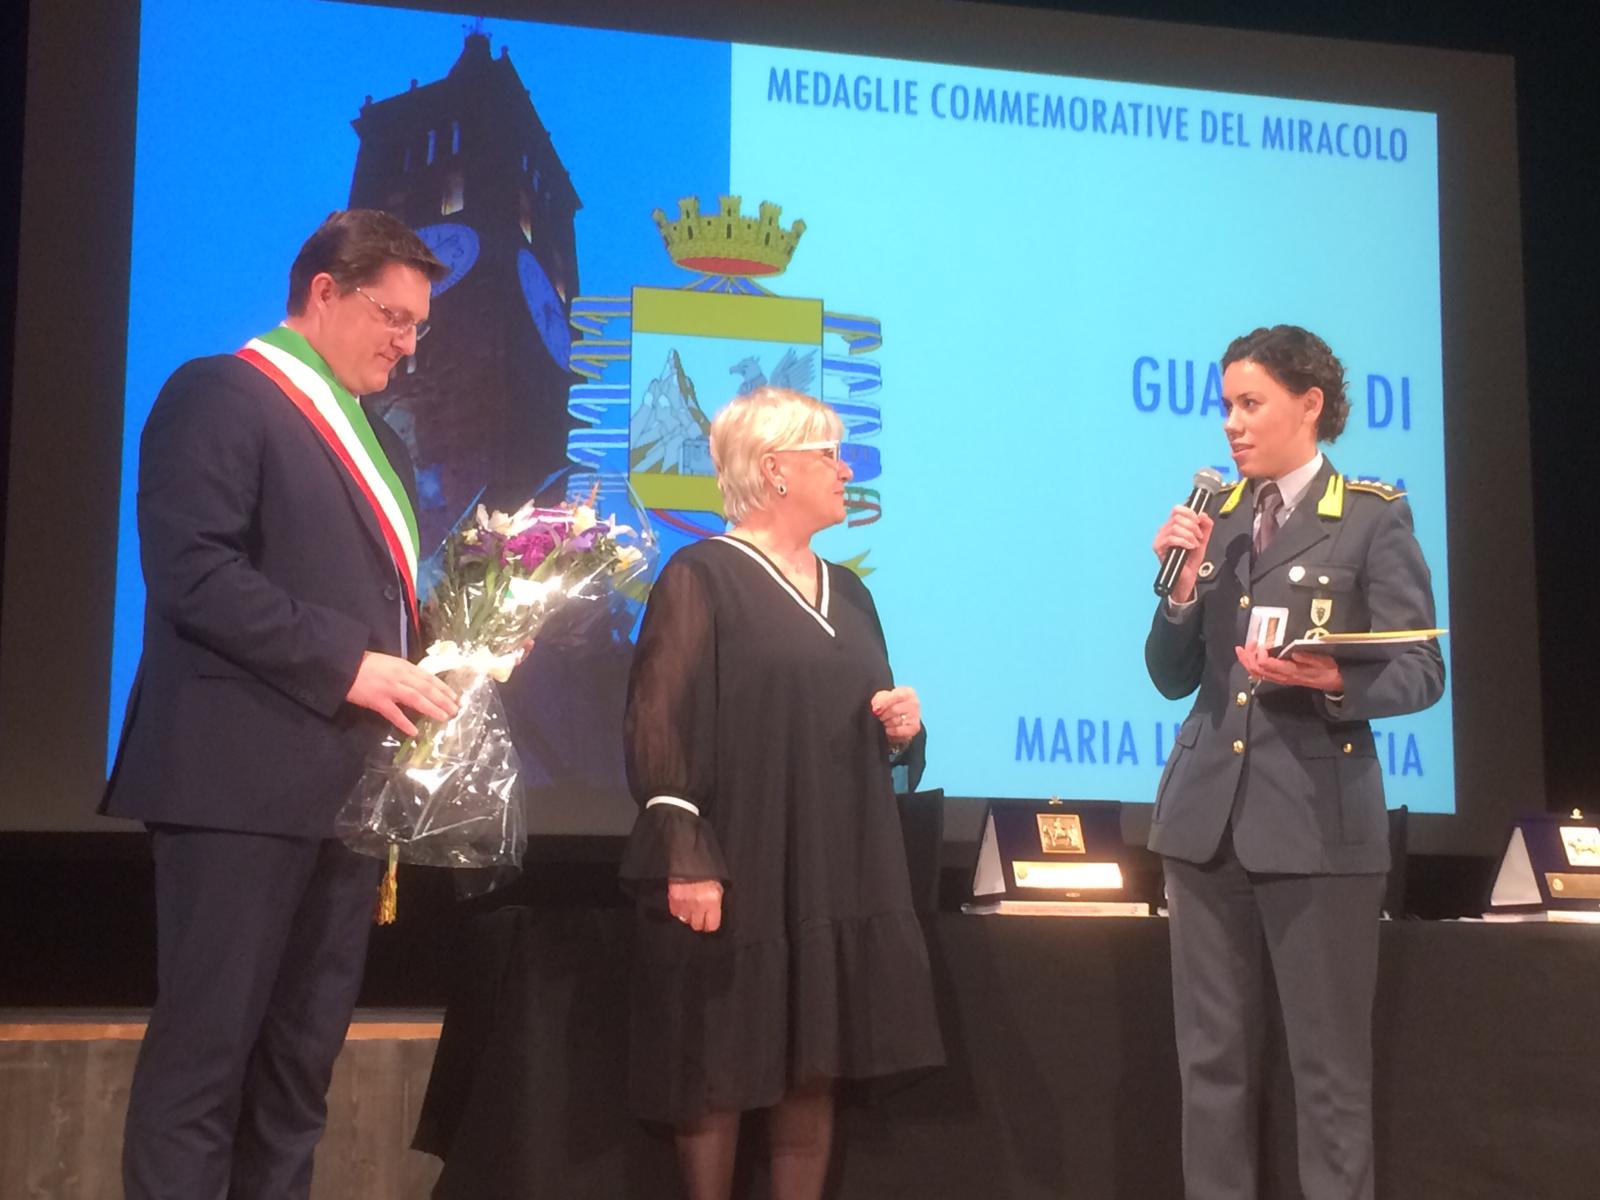 Madonna delle Lacrime 2019 medaglie commemorative Maria Luisa Ciancia Guardia di Finanza